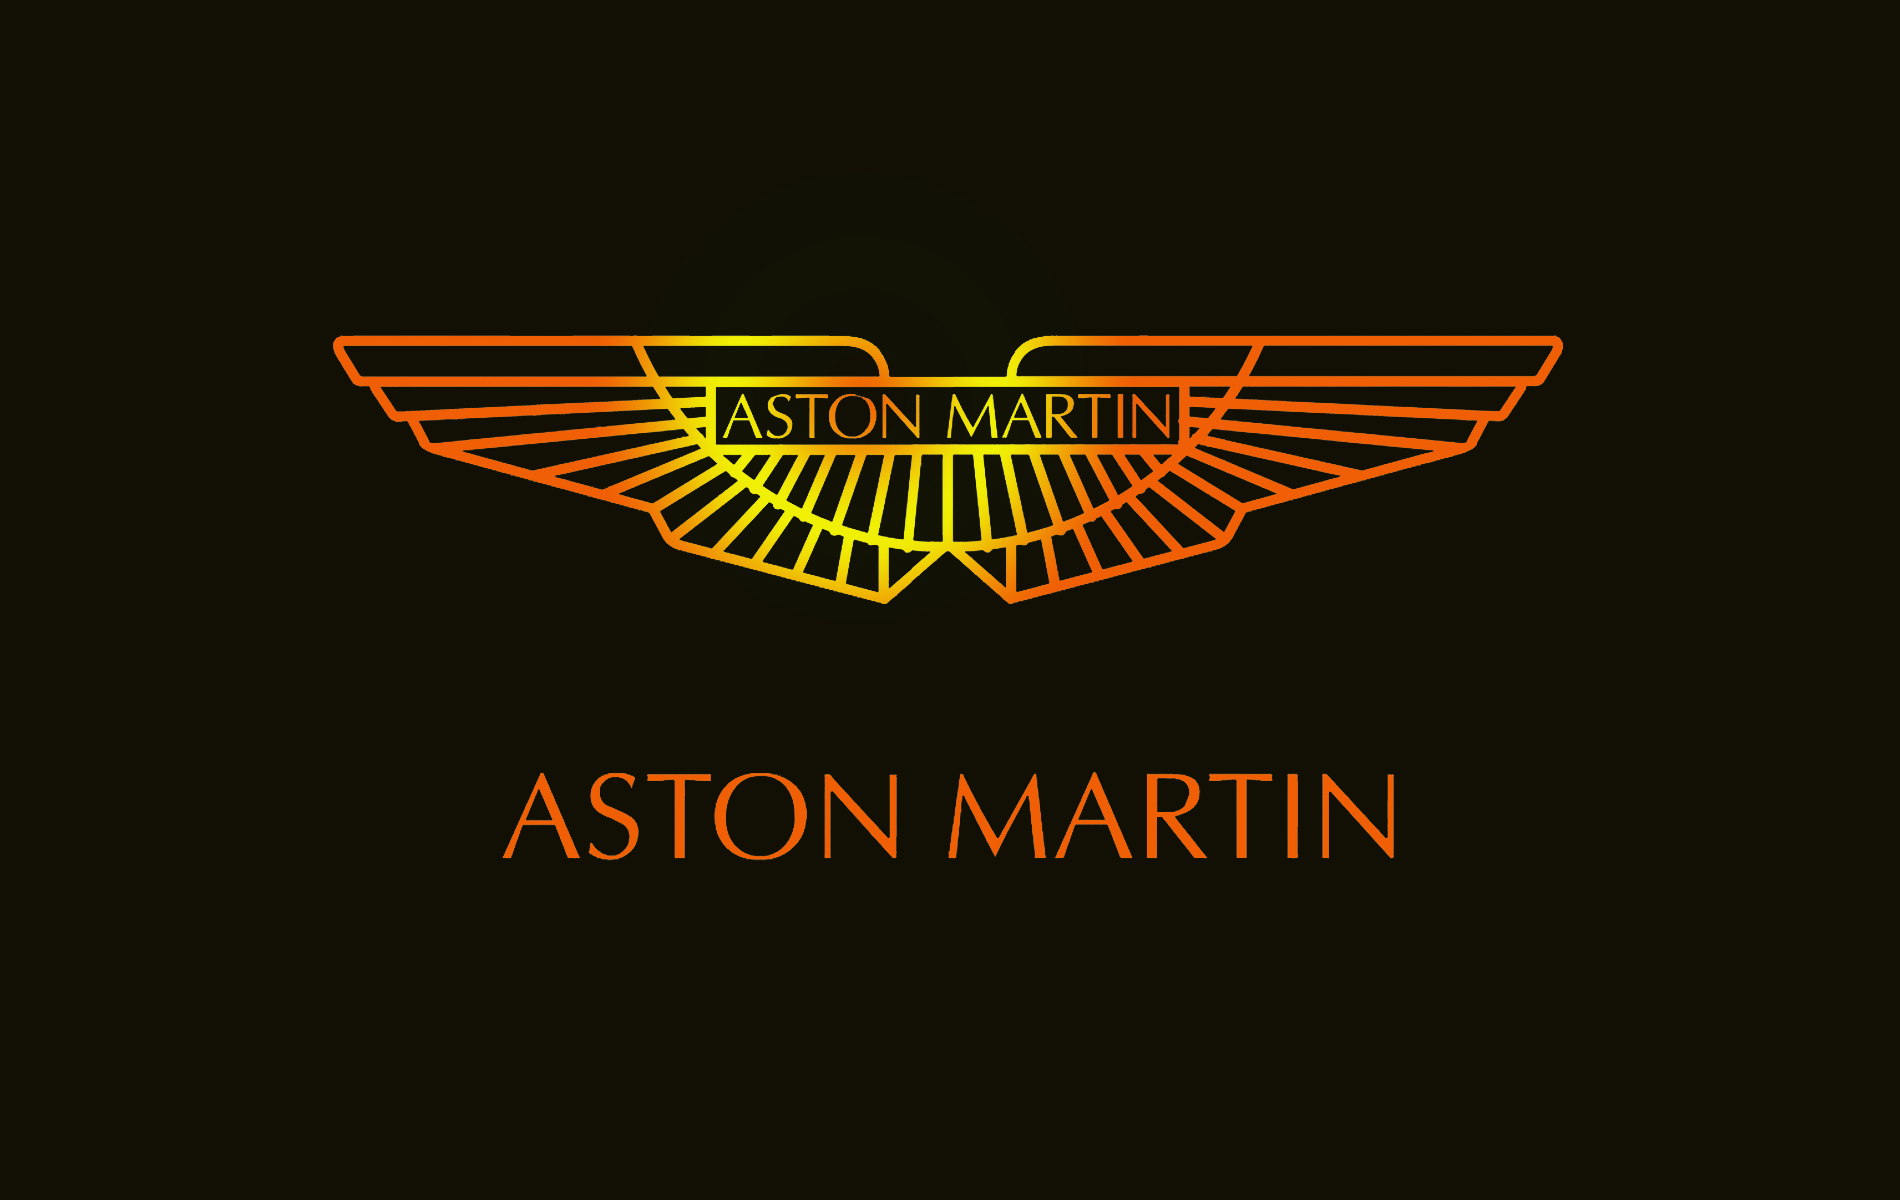 aston martin logo wallpaper,text,schriftart,emblem,grafik,grafikdesign